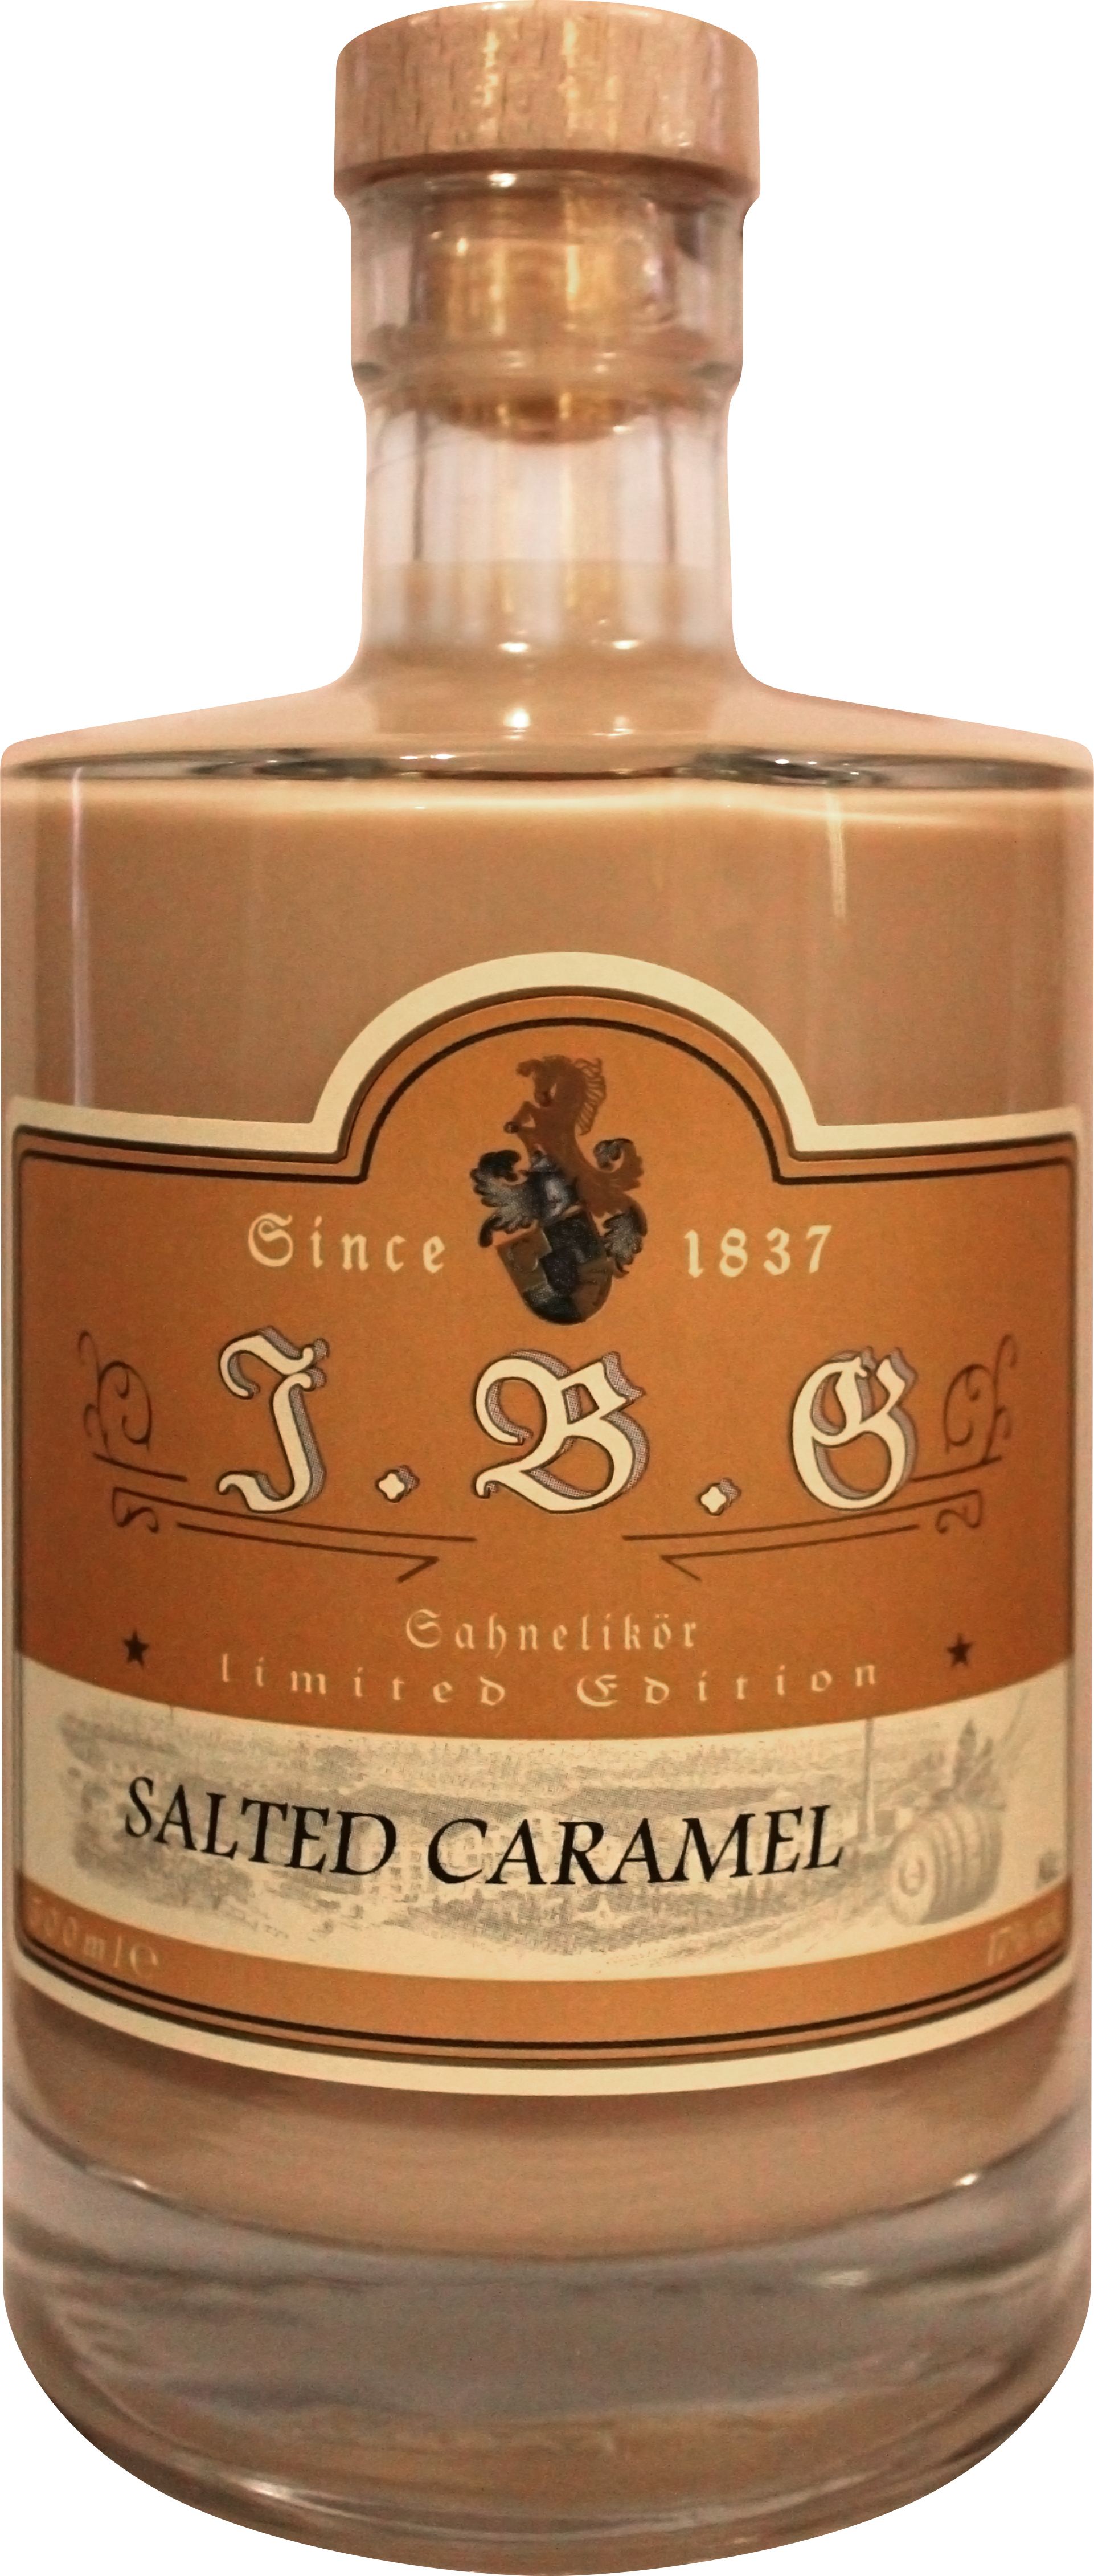 Salted Caramel Sahnelikör 0,5 | ltr. 17%vol., Geuting Gutsbrennerei